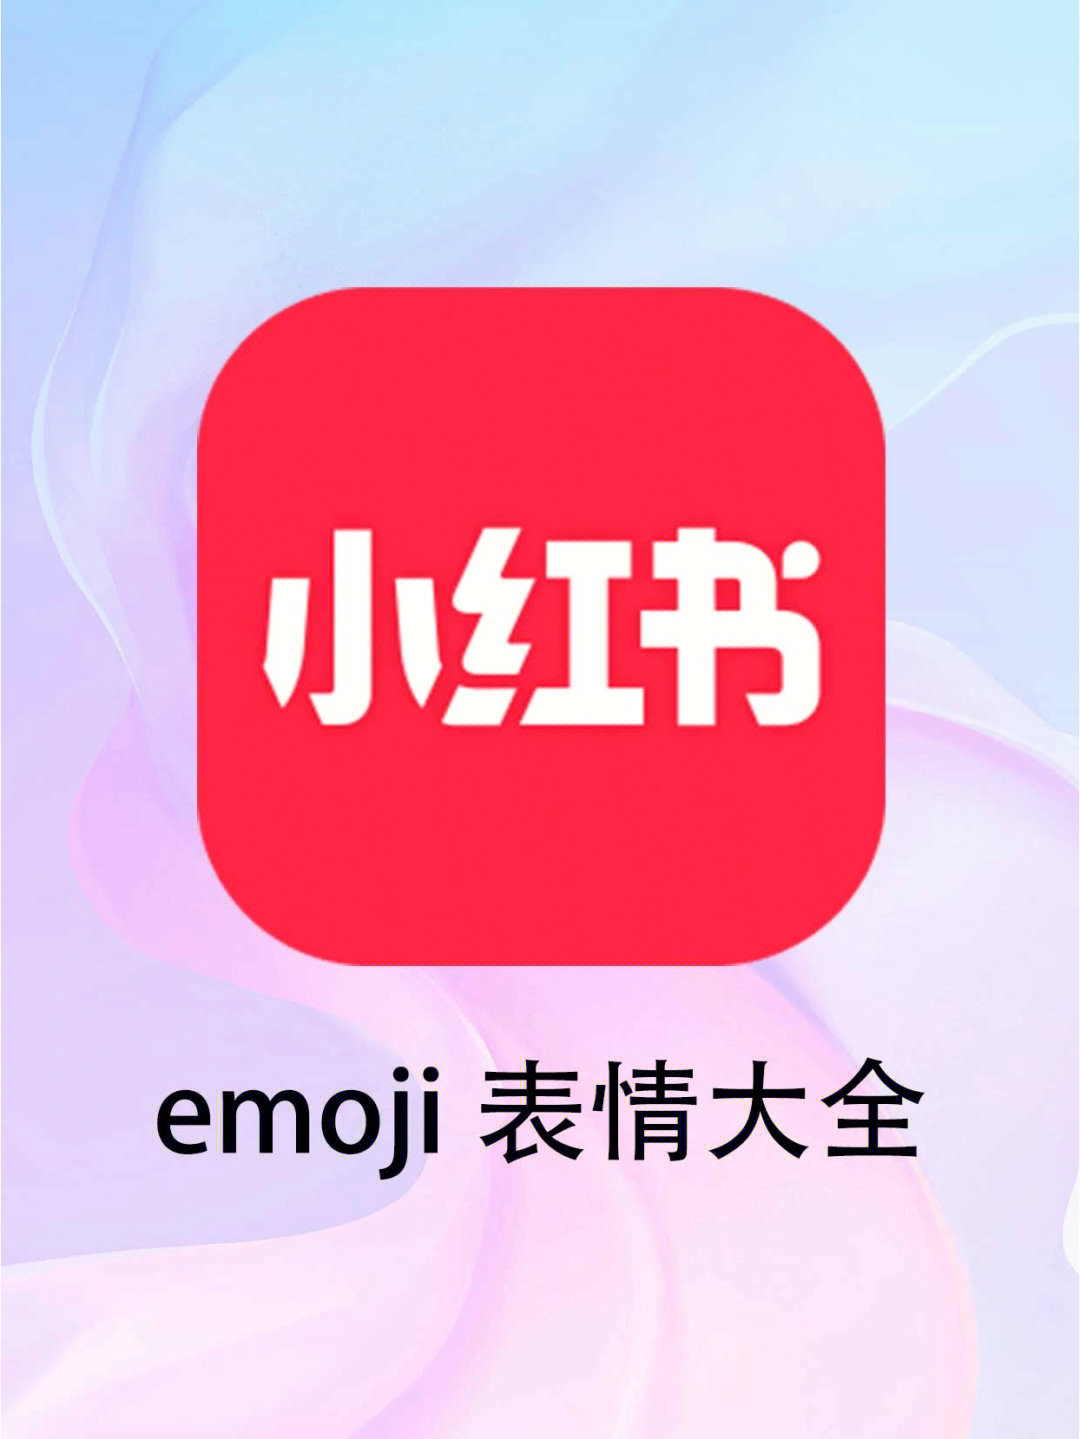 千纸鹤表情emoji图片